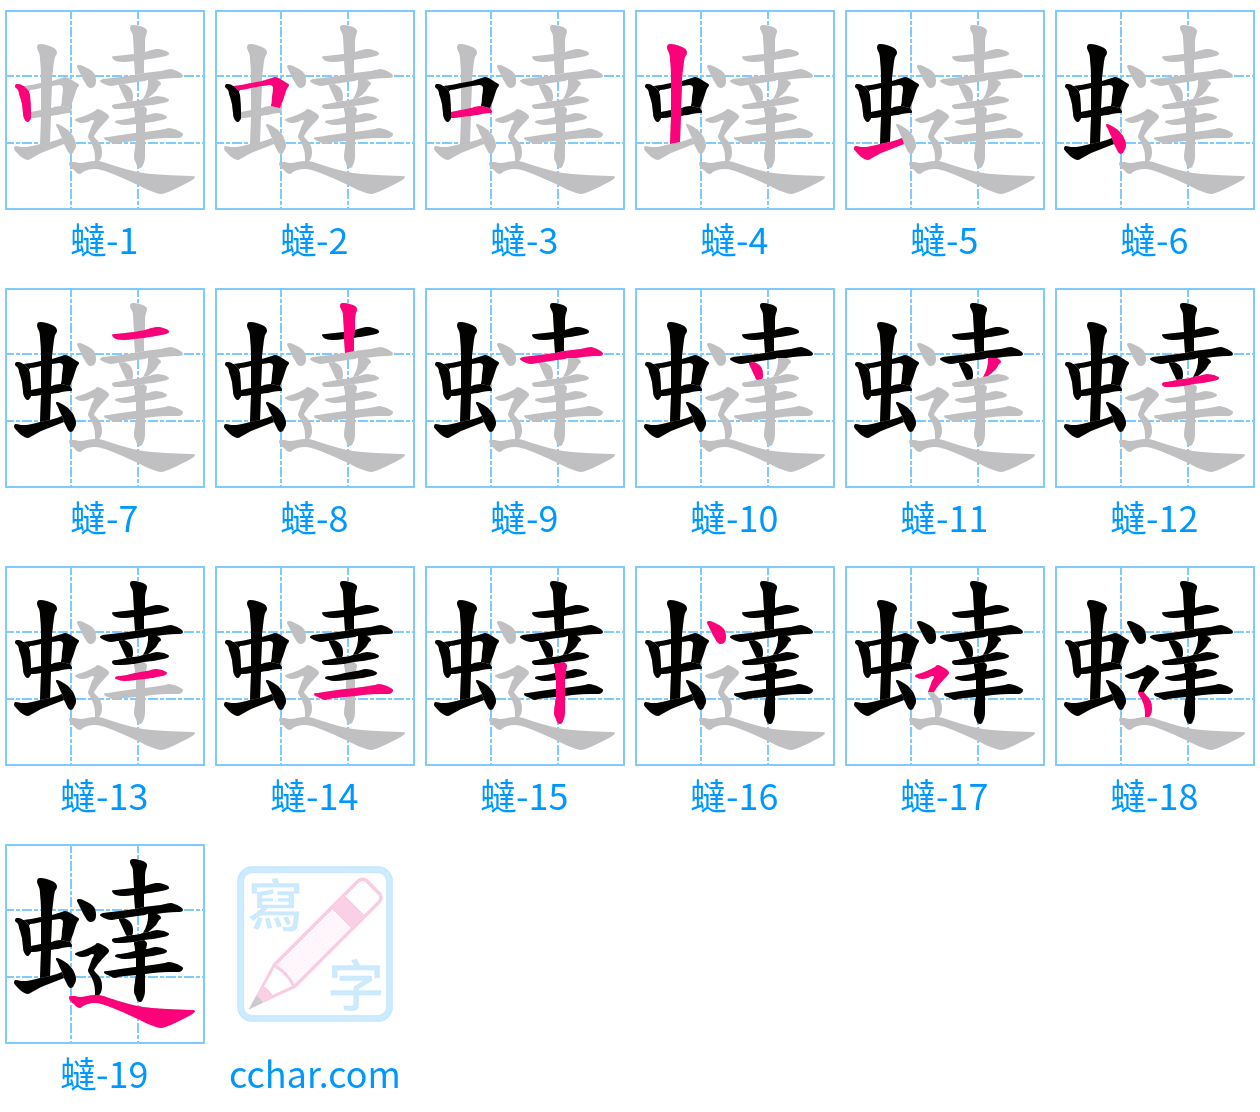 蟽 stroke order step-by-step diagram